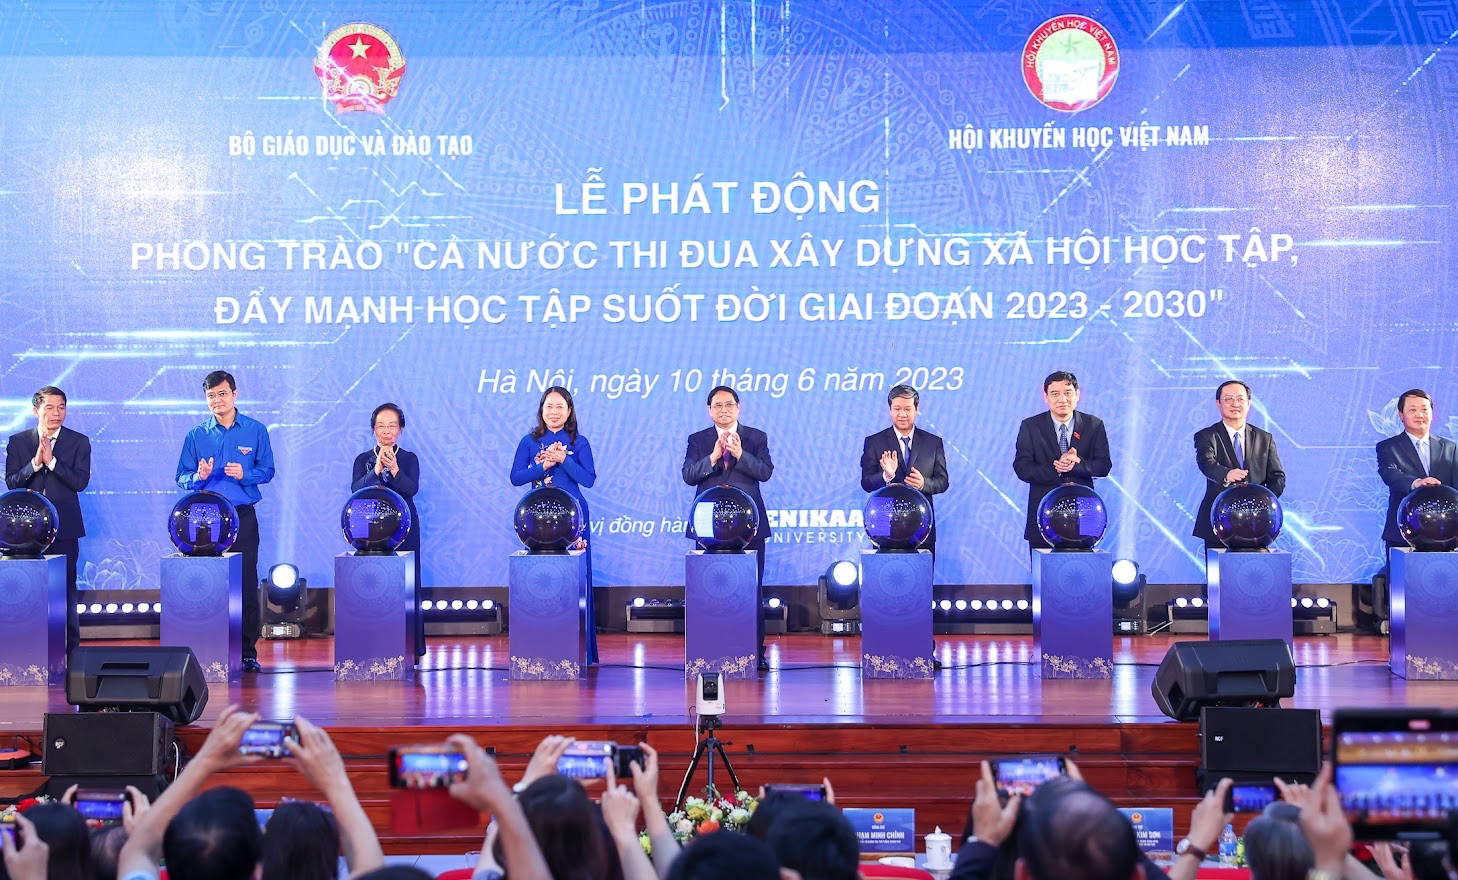 Thủ tướng Phạm Minh Chính và các đại biểu thực hiện nghi thức phát động Phong trào "Cả nước thi đua xây dựng xã hội học tập, đẩy mạnh học tập suốt đời giai đoạn 2023-2030" - Ảnh: VGP/Nhật Bắc